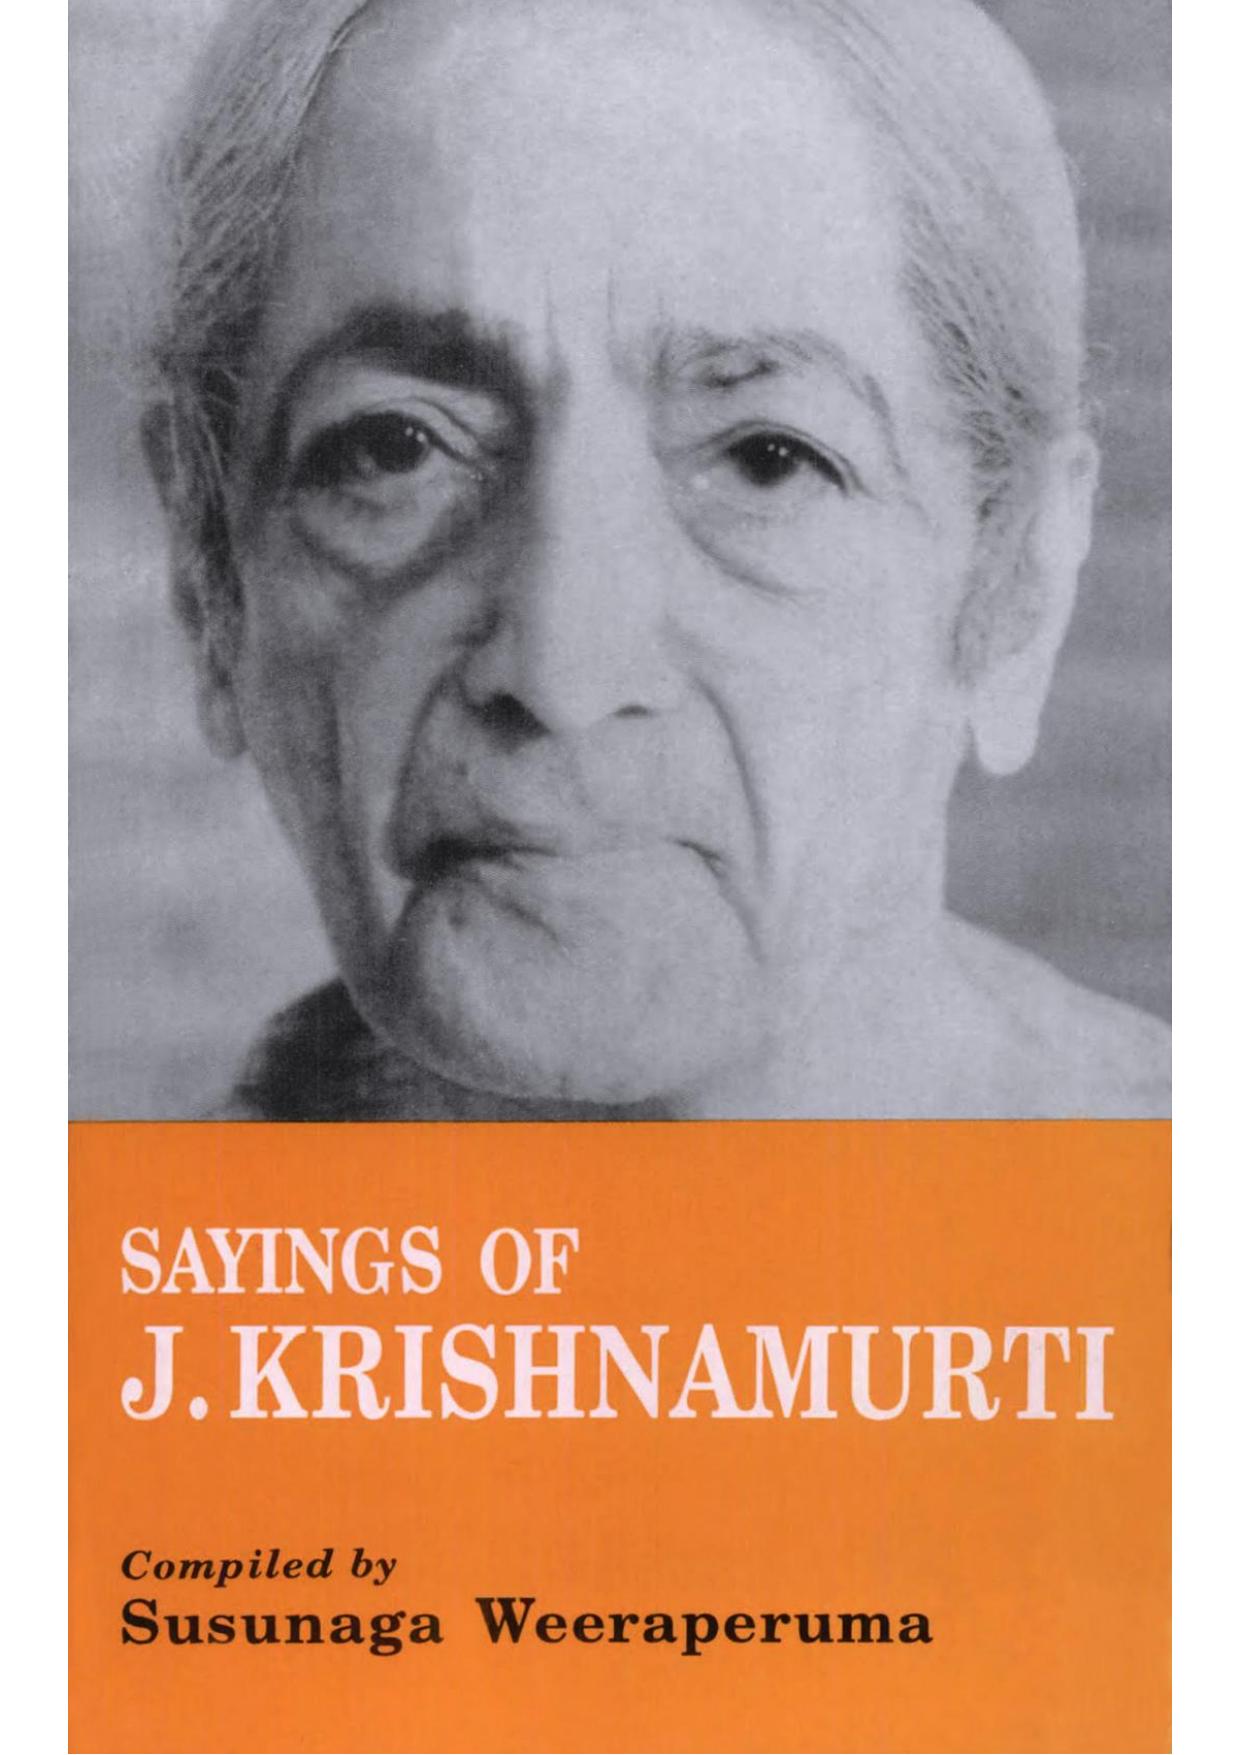 Sayings of J. Krishnamurti by Susunaga Weeraperuma